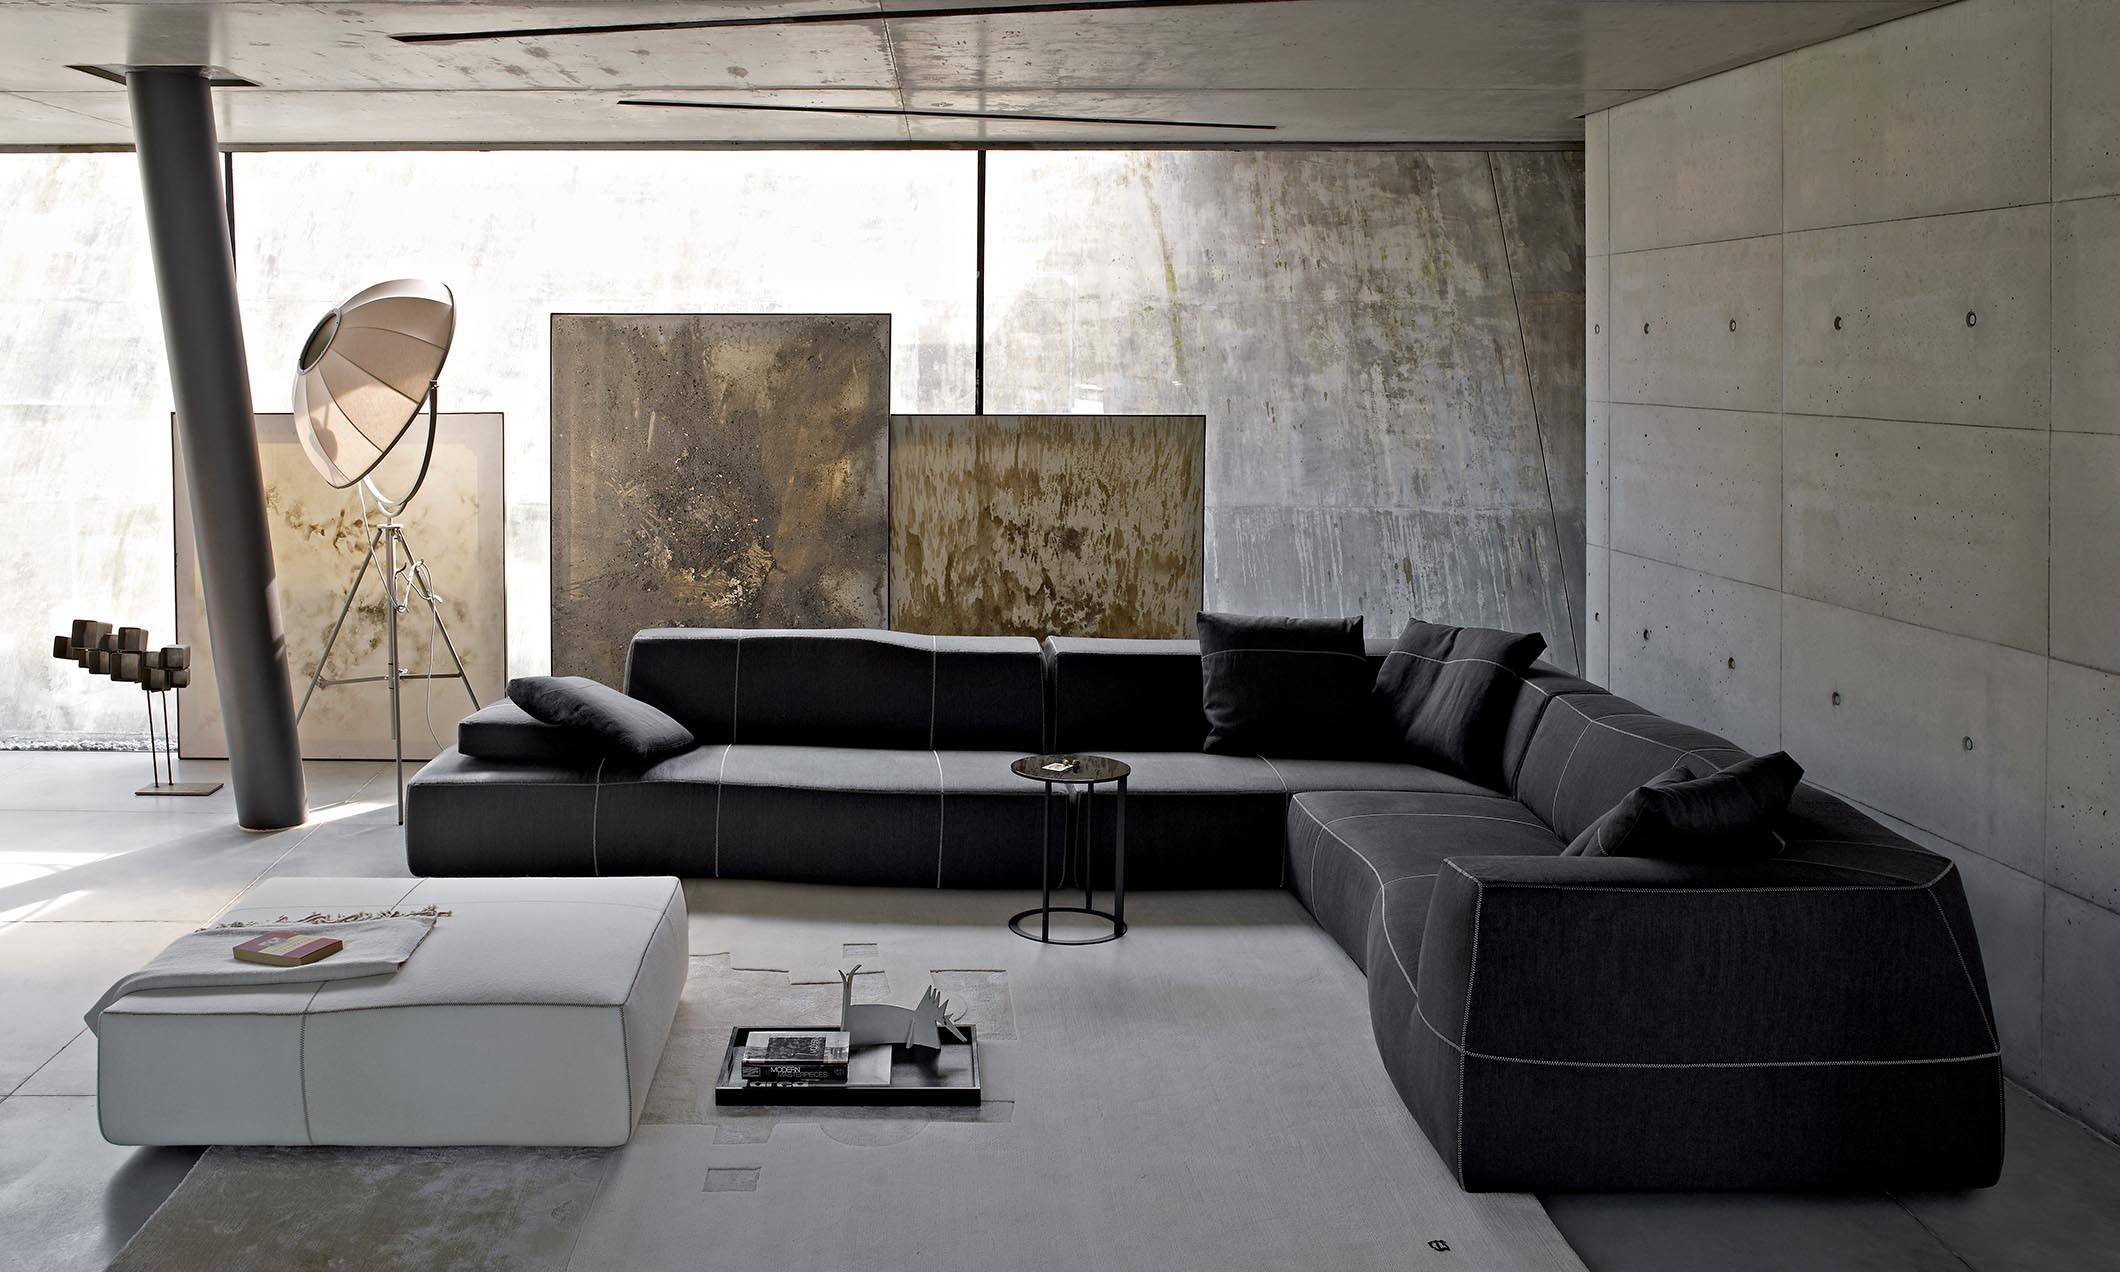 Modern Living Room Furniture Design